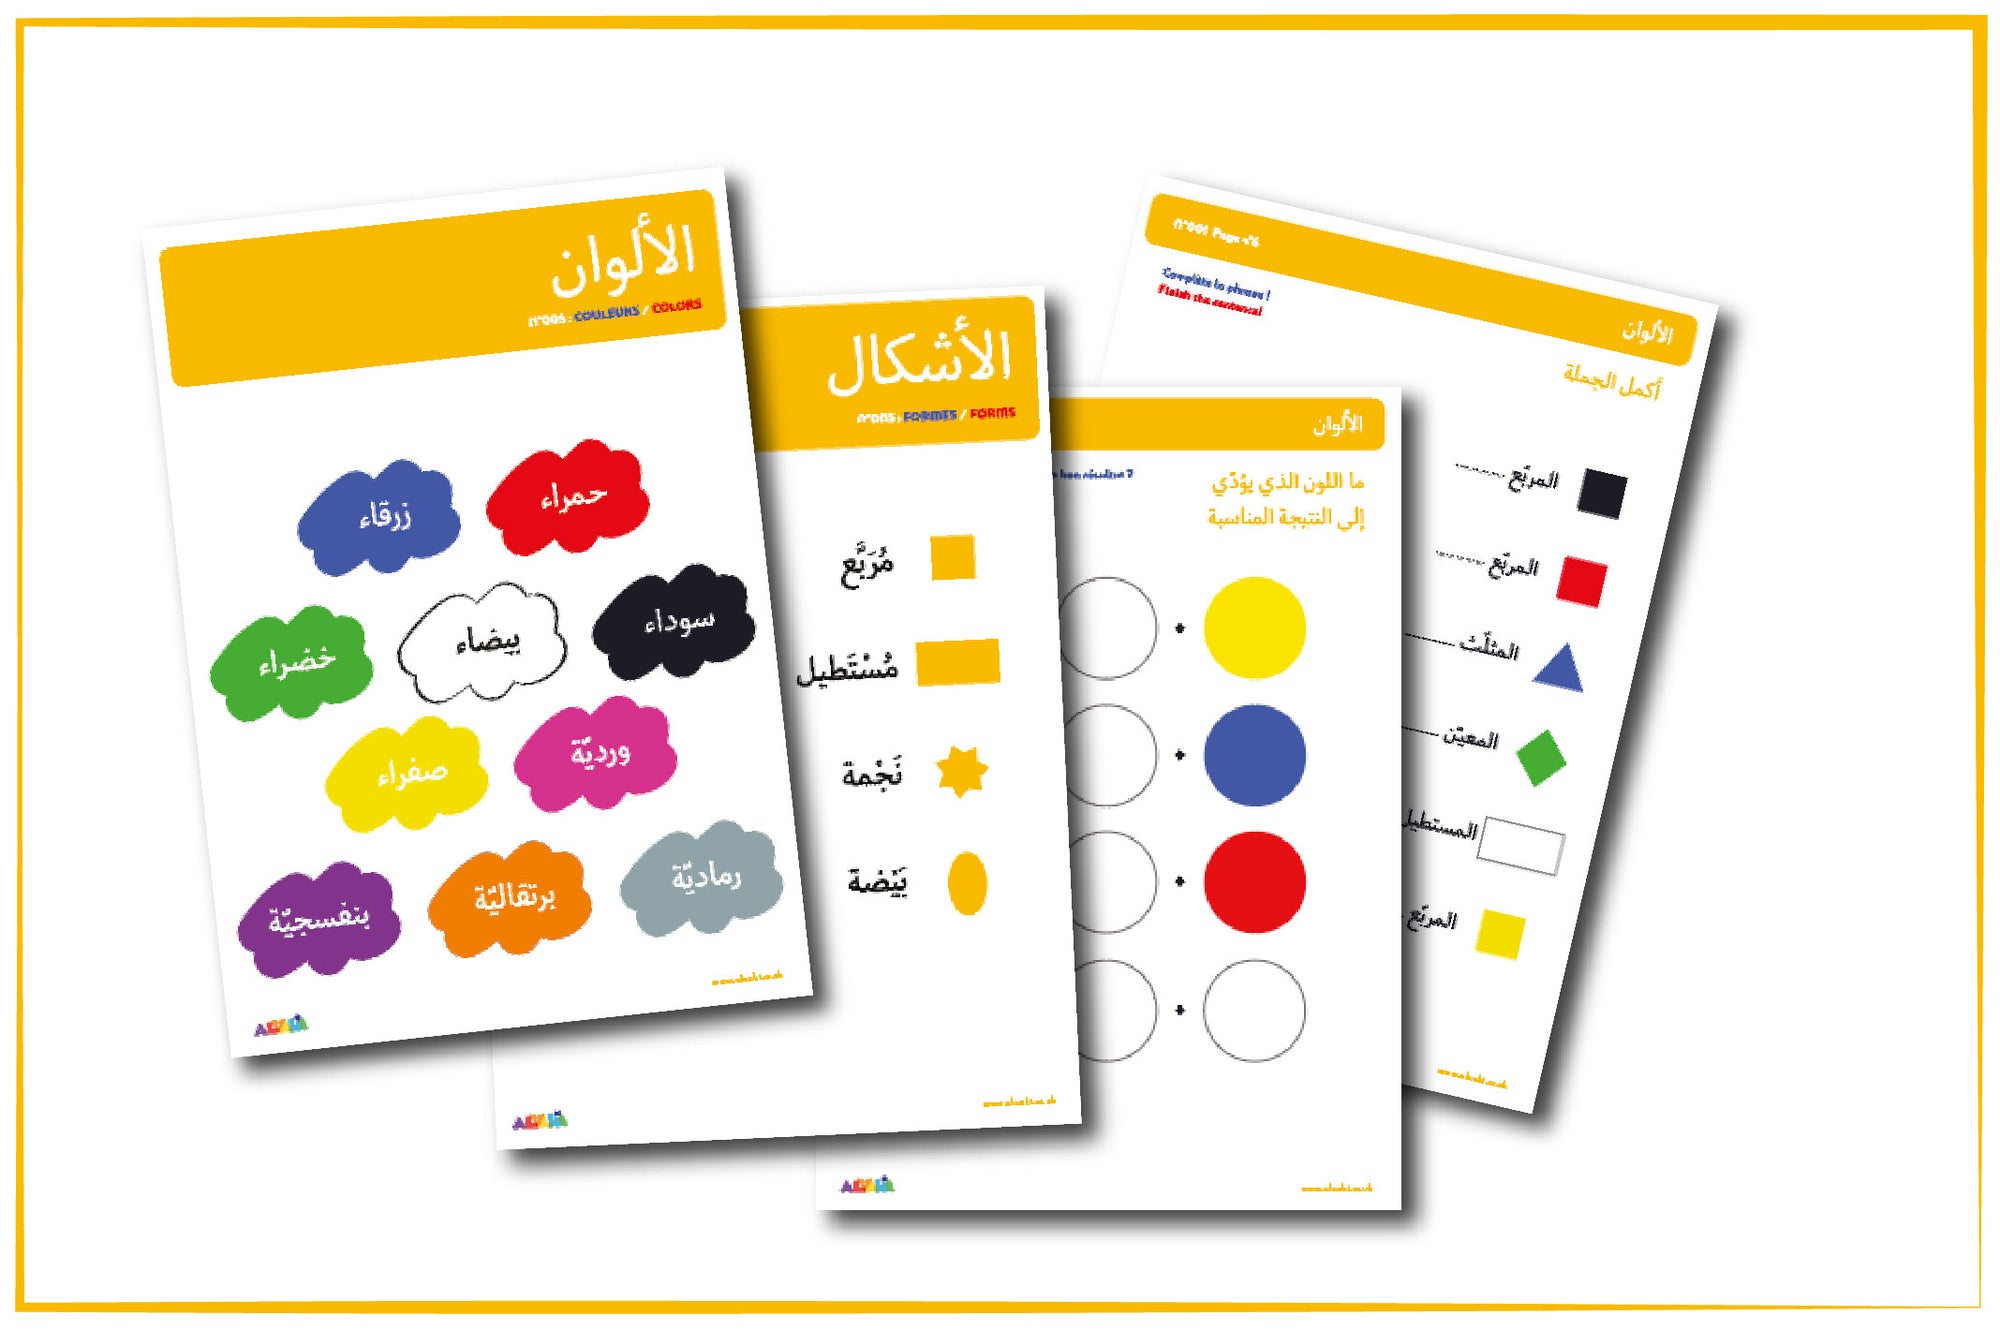 لنتعلم الألوان بالعربيّة!